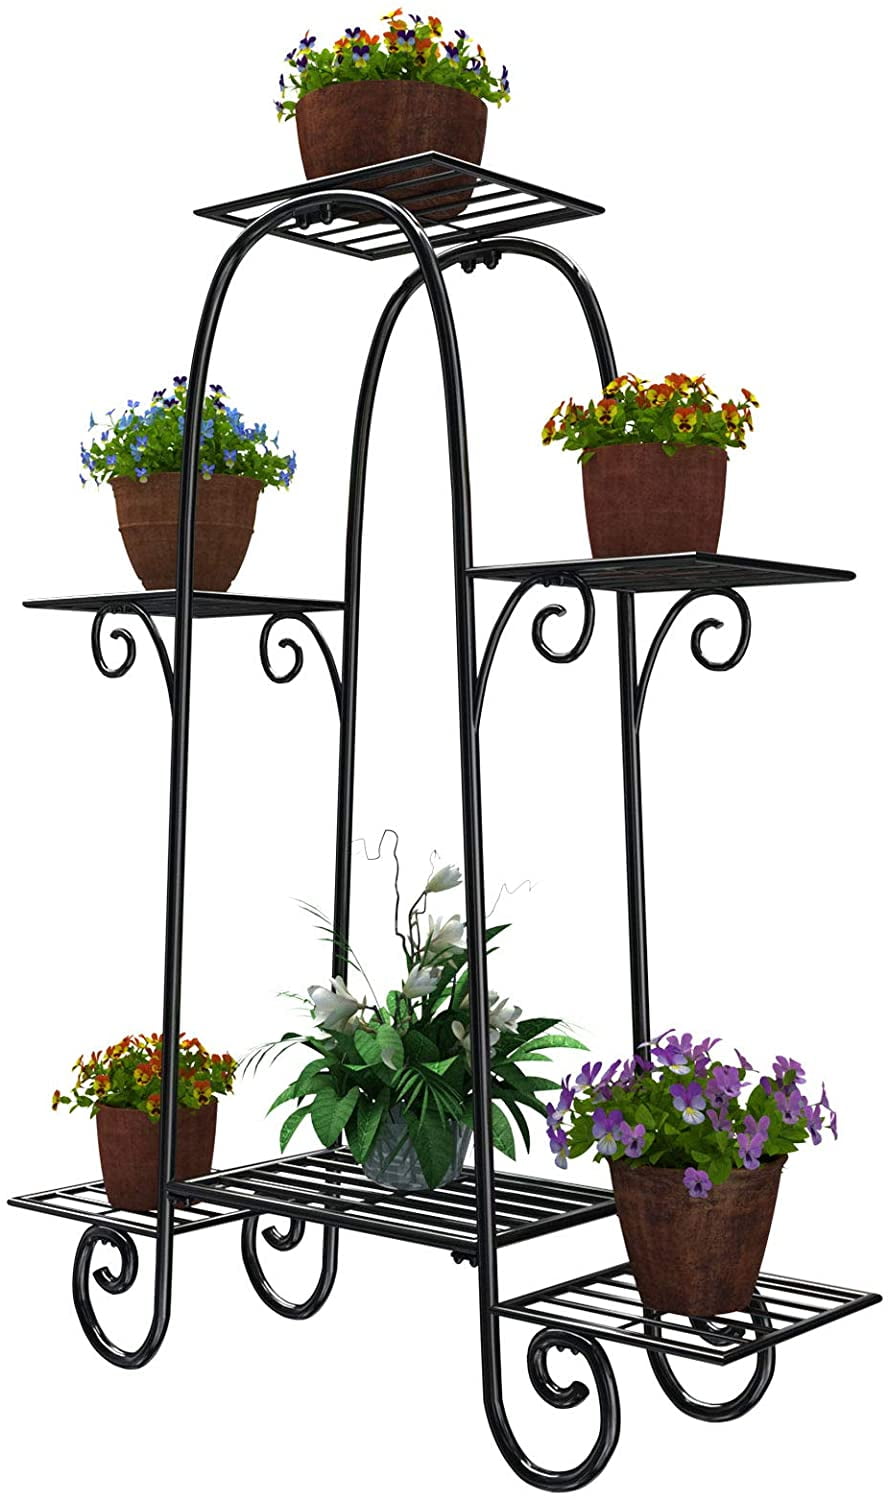 6 Tiers Metal Plant Stand Flower Balcony Pot Patio Rack Outdoor Home Garden